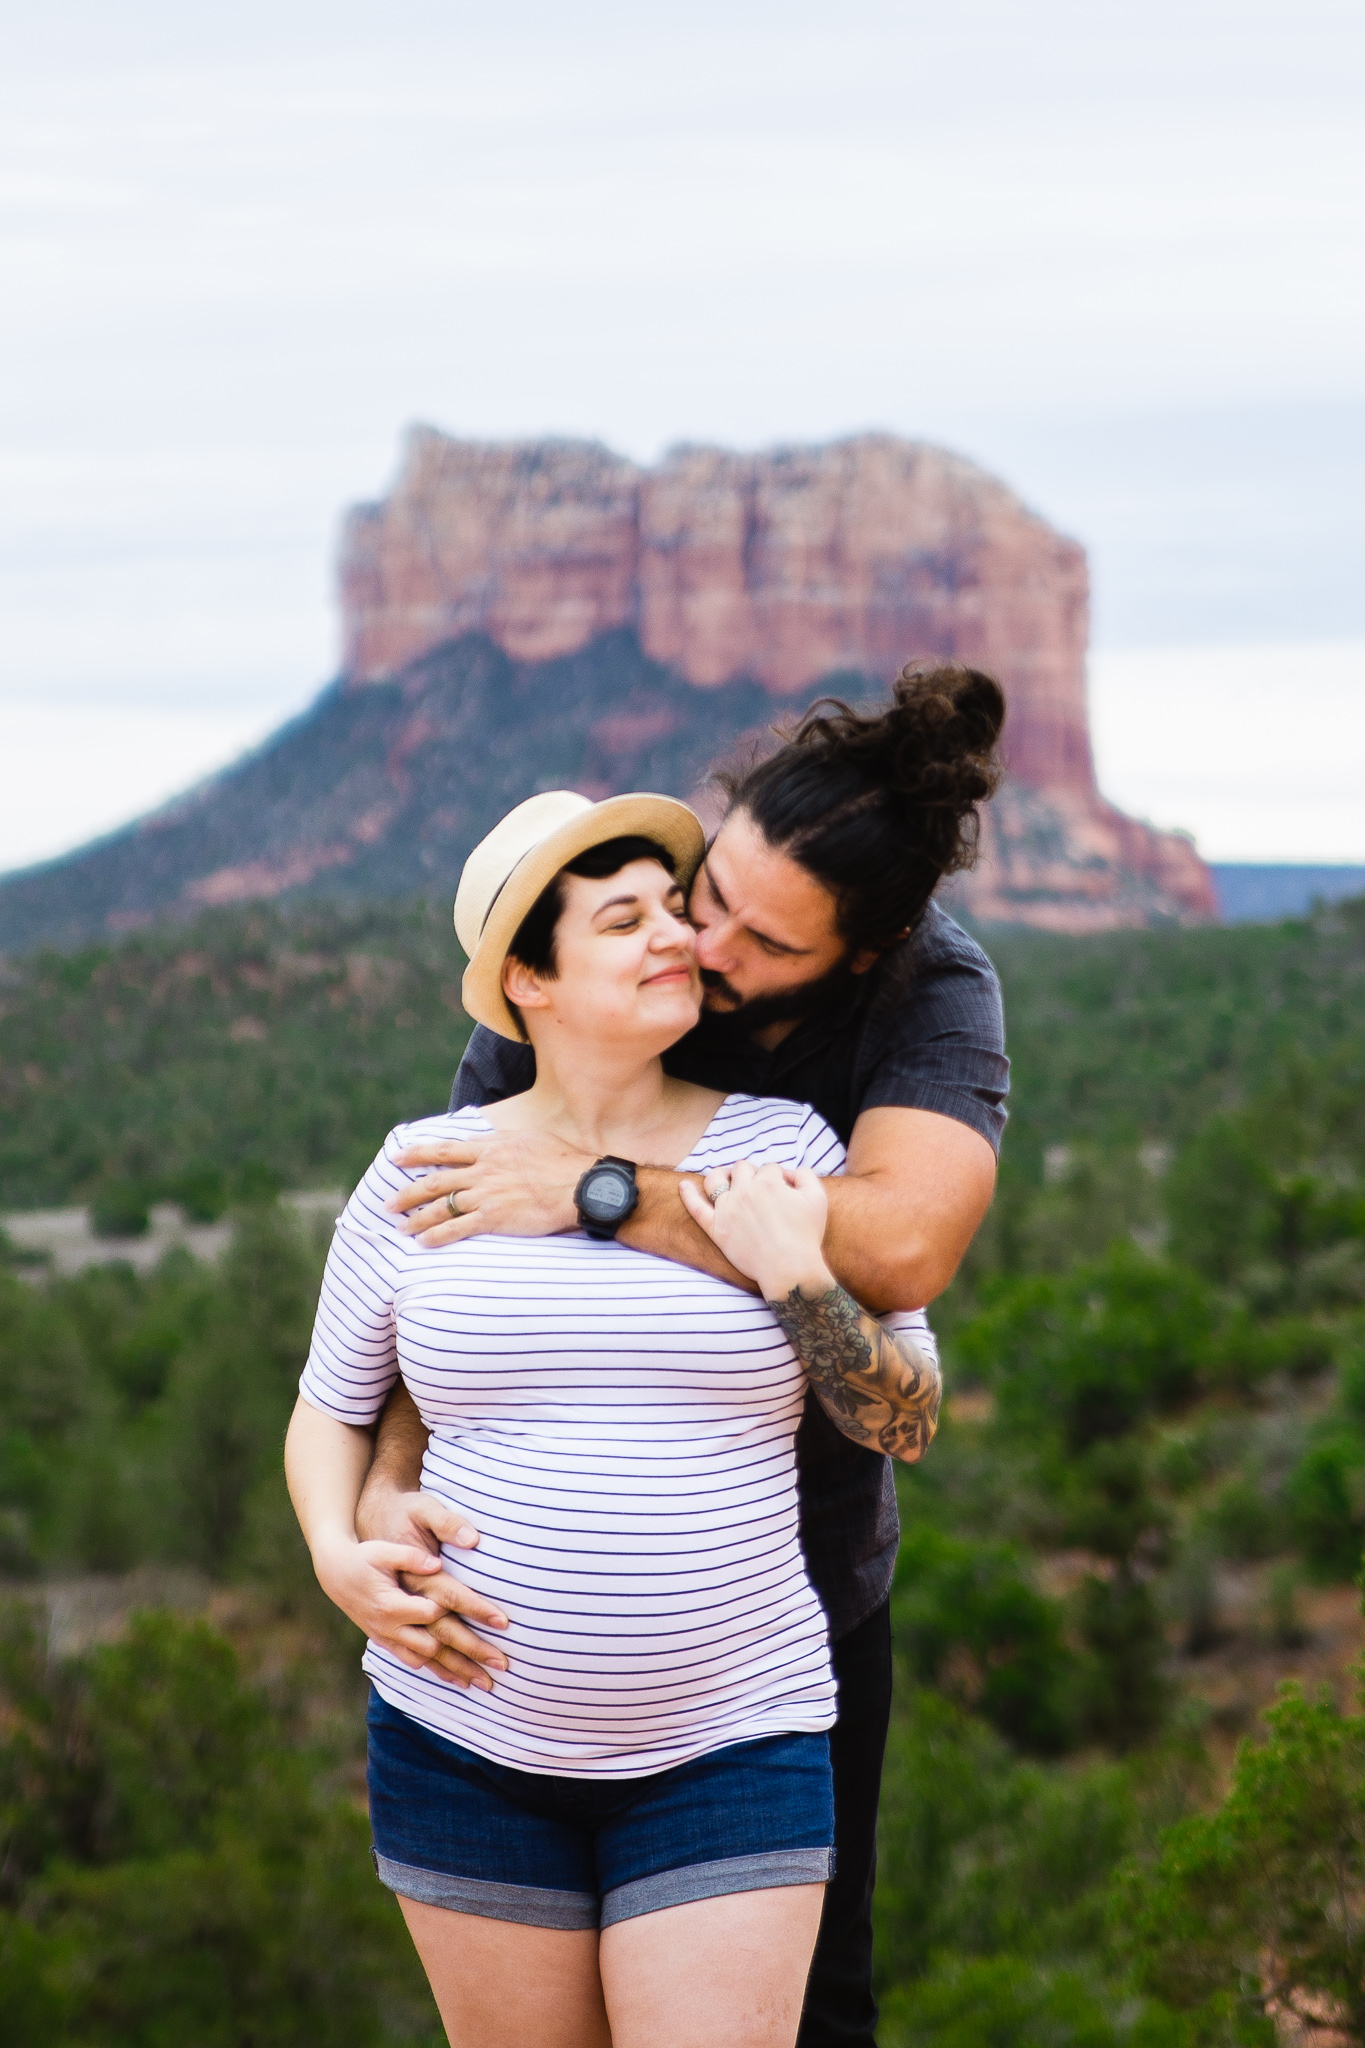 DIY Maternity Session in Sedona, Arizona by PMA Photography.